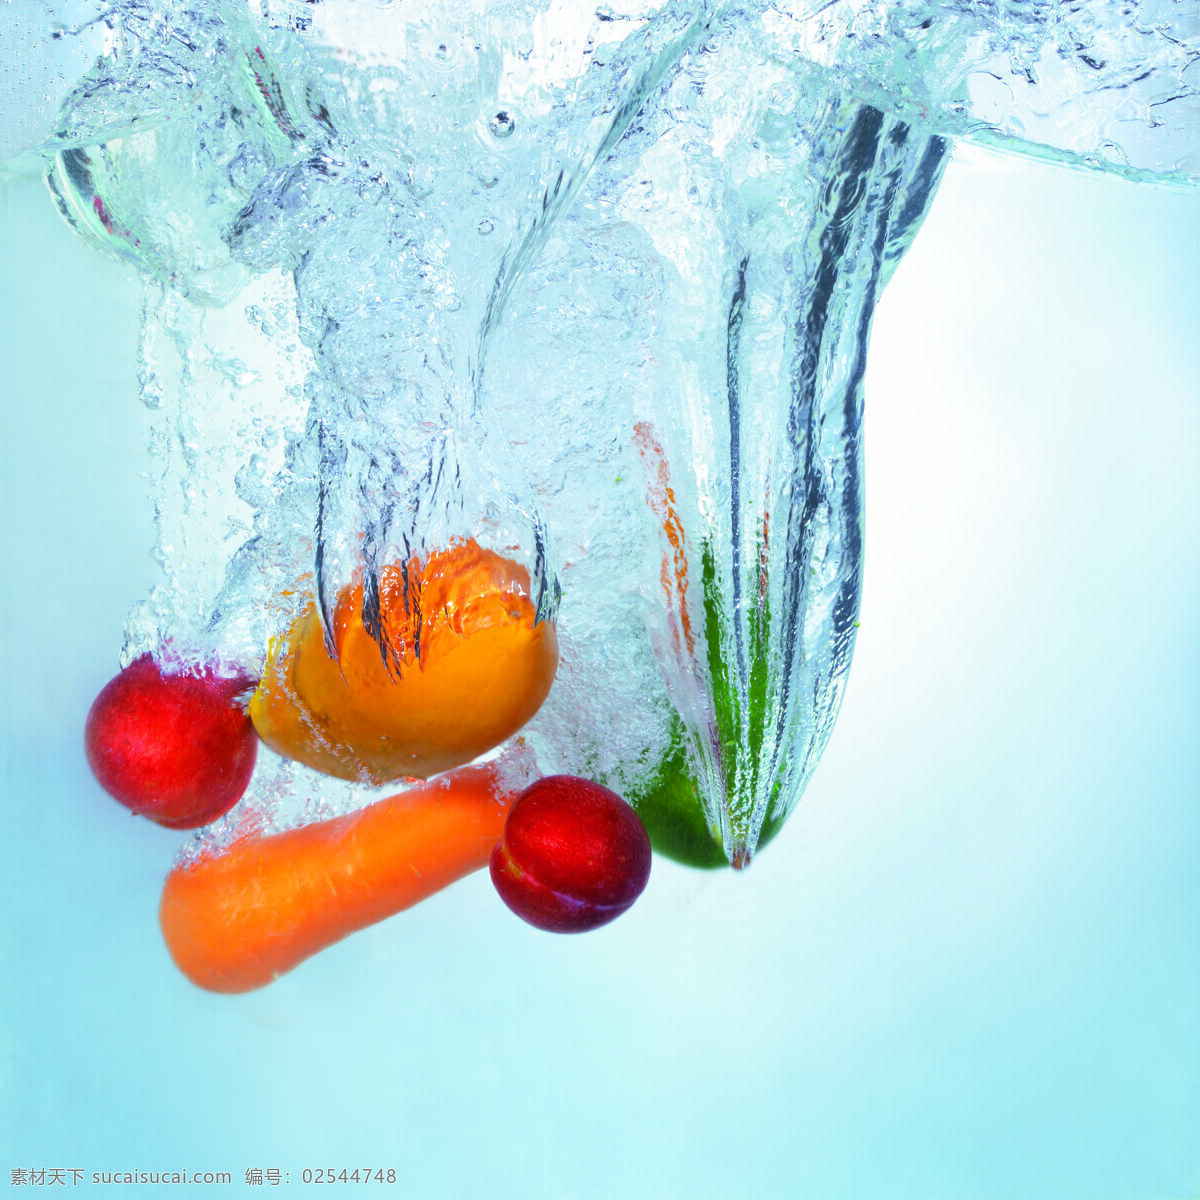 水下 各种 水果 设计素材 水波纹 水花四溅 水底 胡萝卜 芒果 西红柿 油桃 摄影素材 生物世界